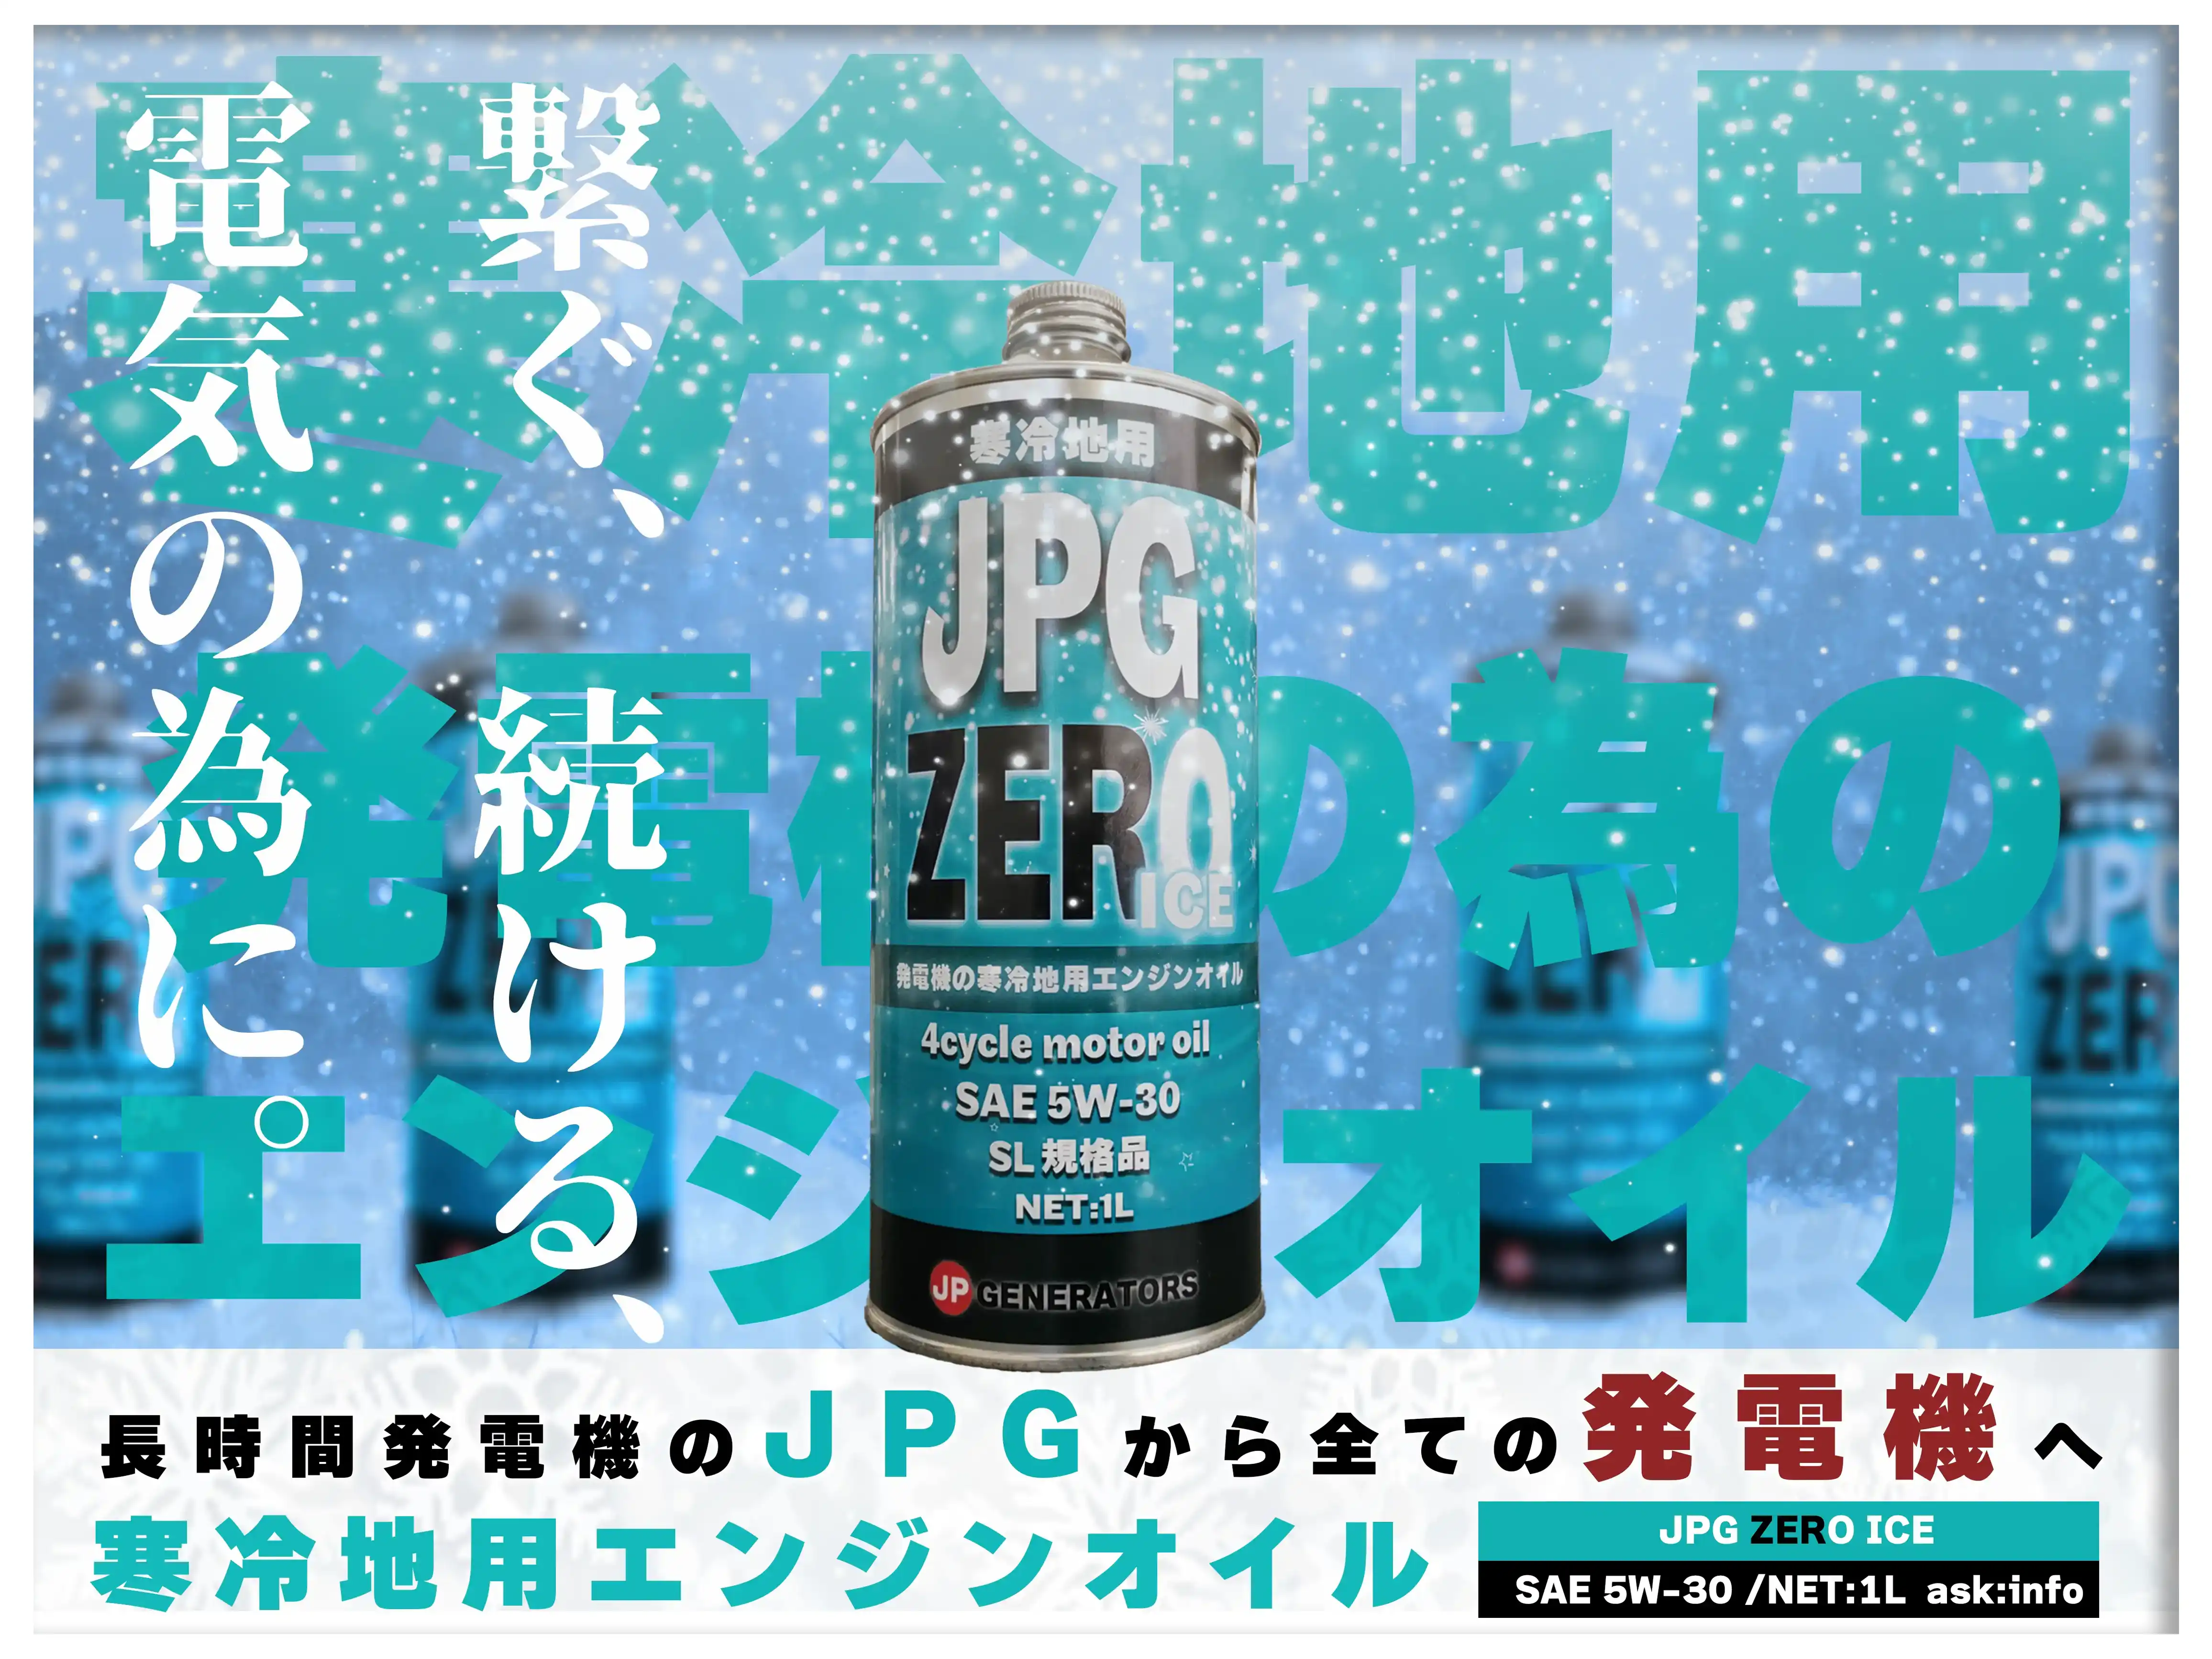 JPG ZERO ICE